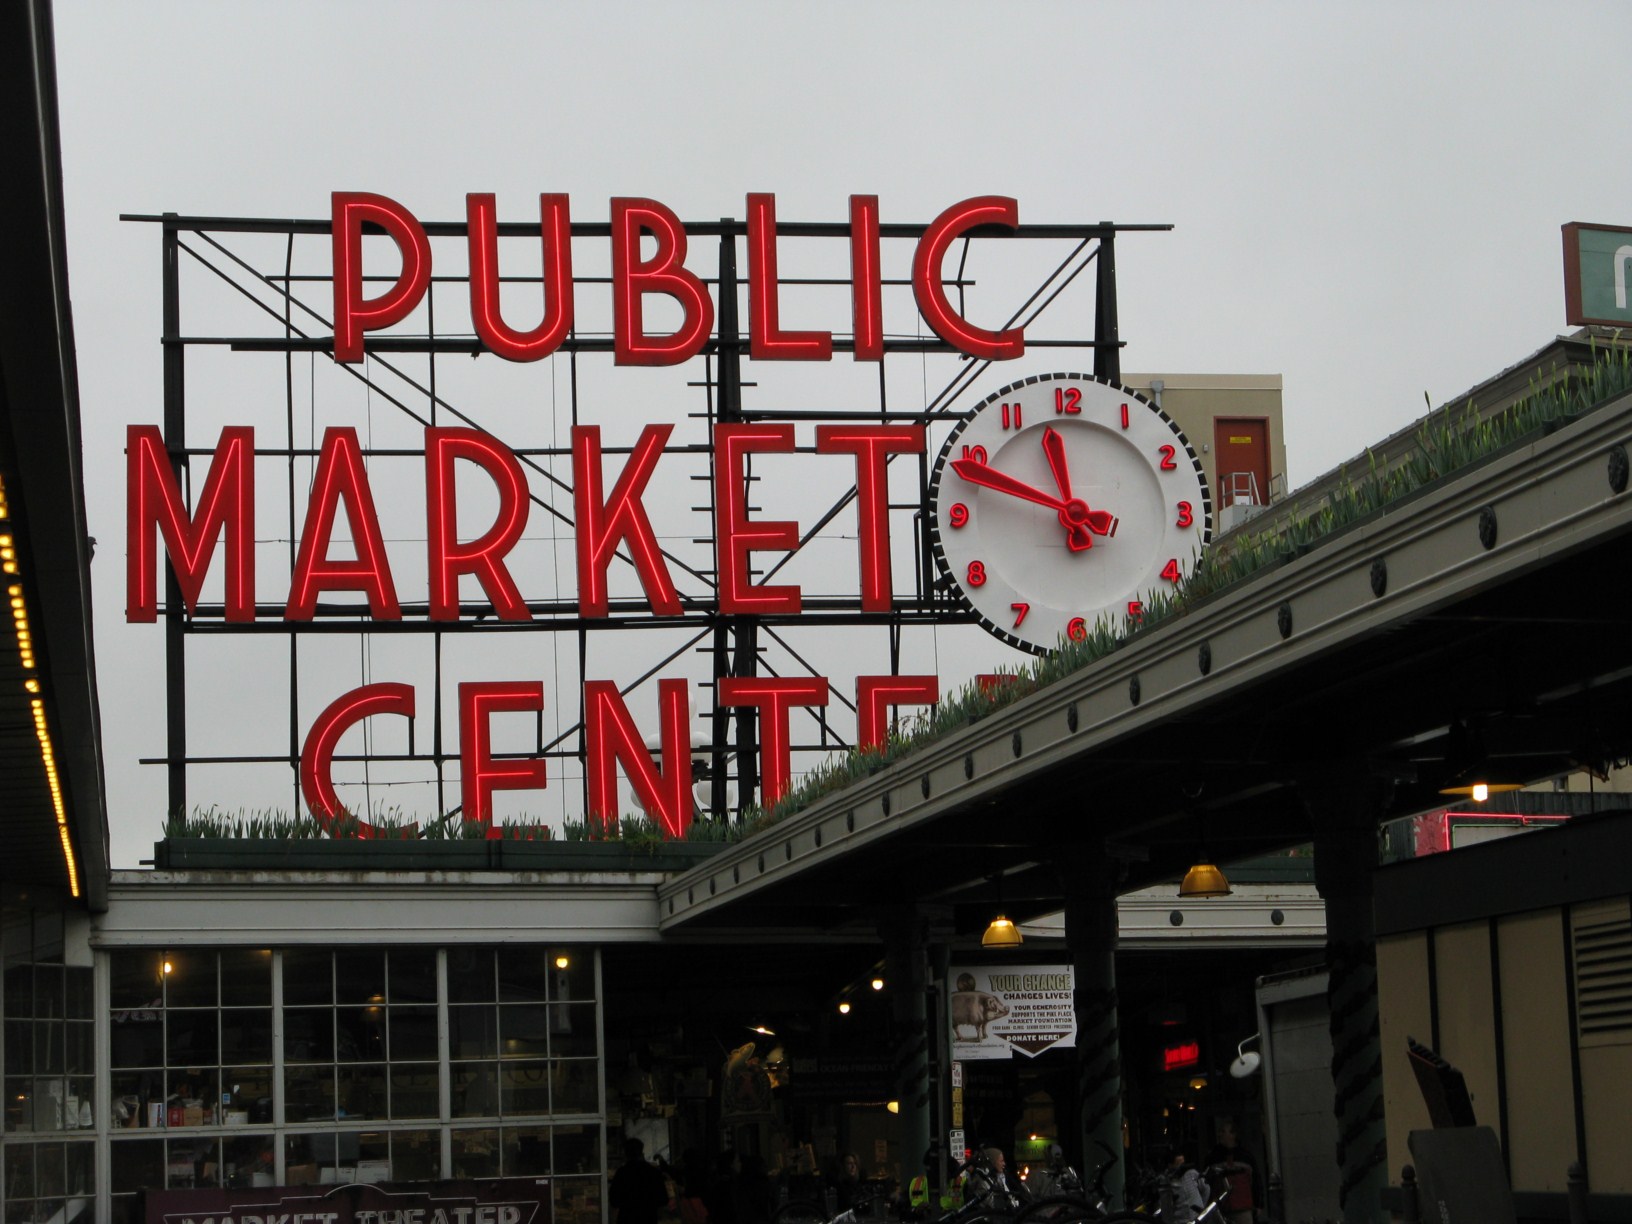 Dieser Schriftzug ist ein touristisches Wahrzeichen von Seattle - Public Pike Market